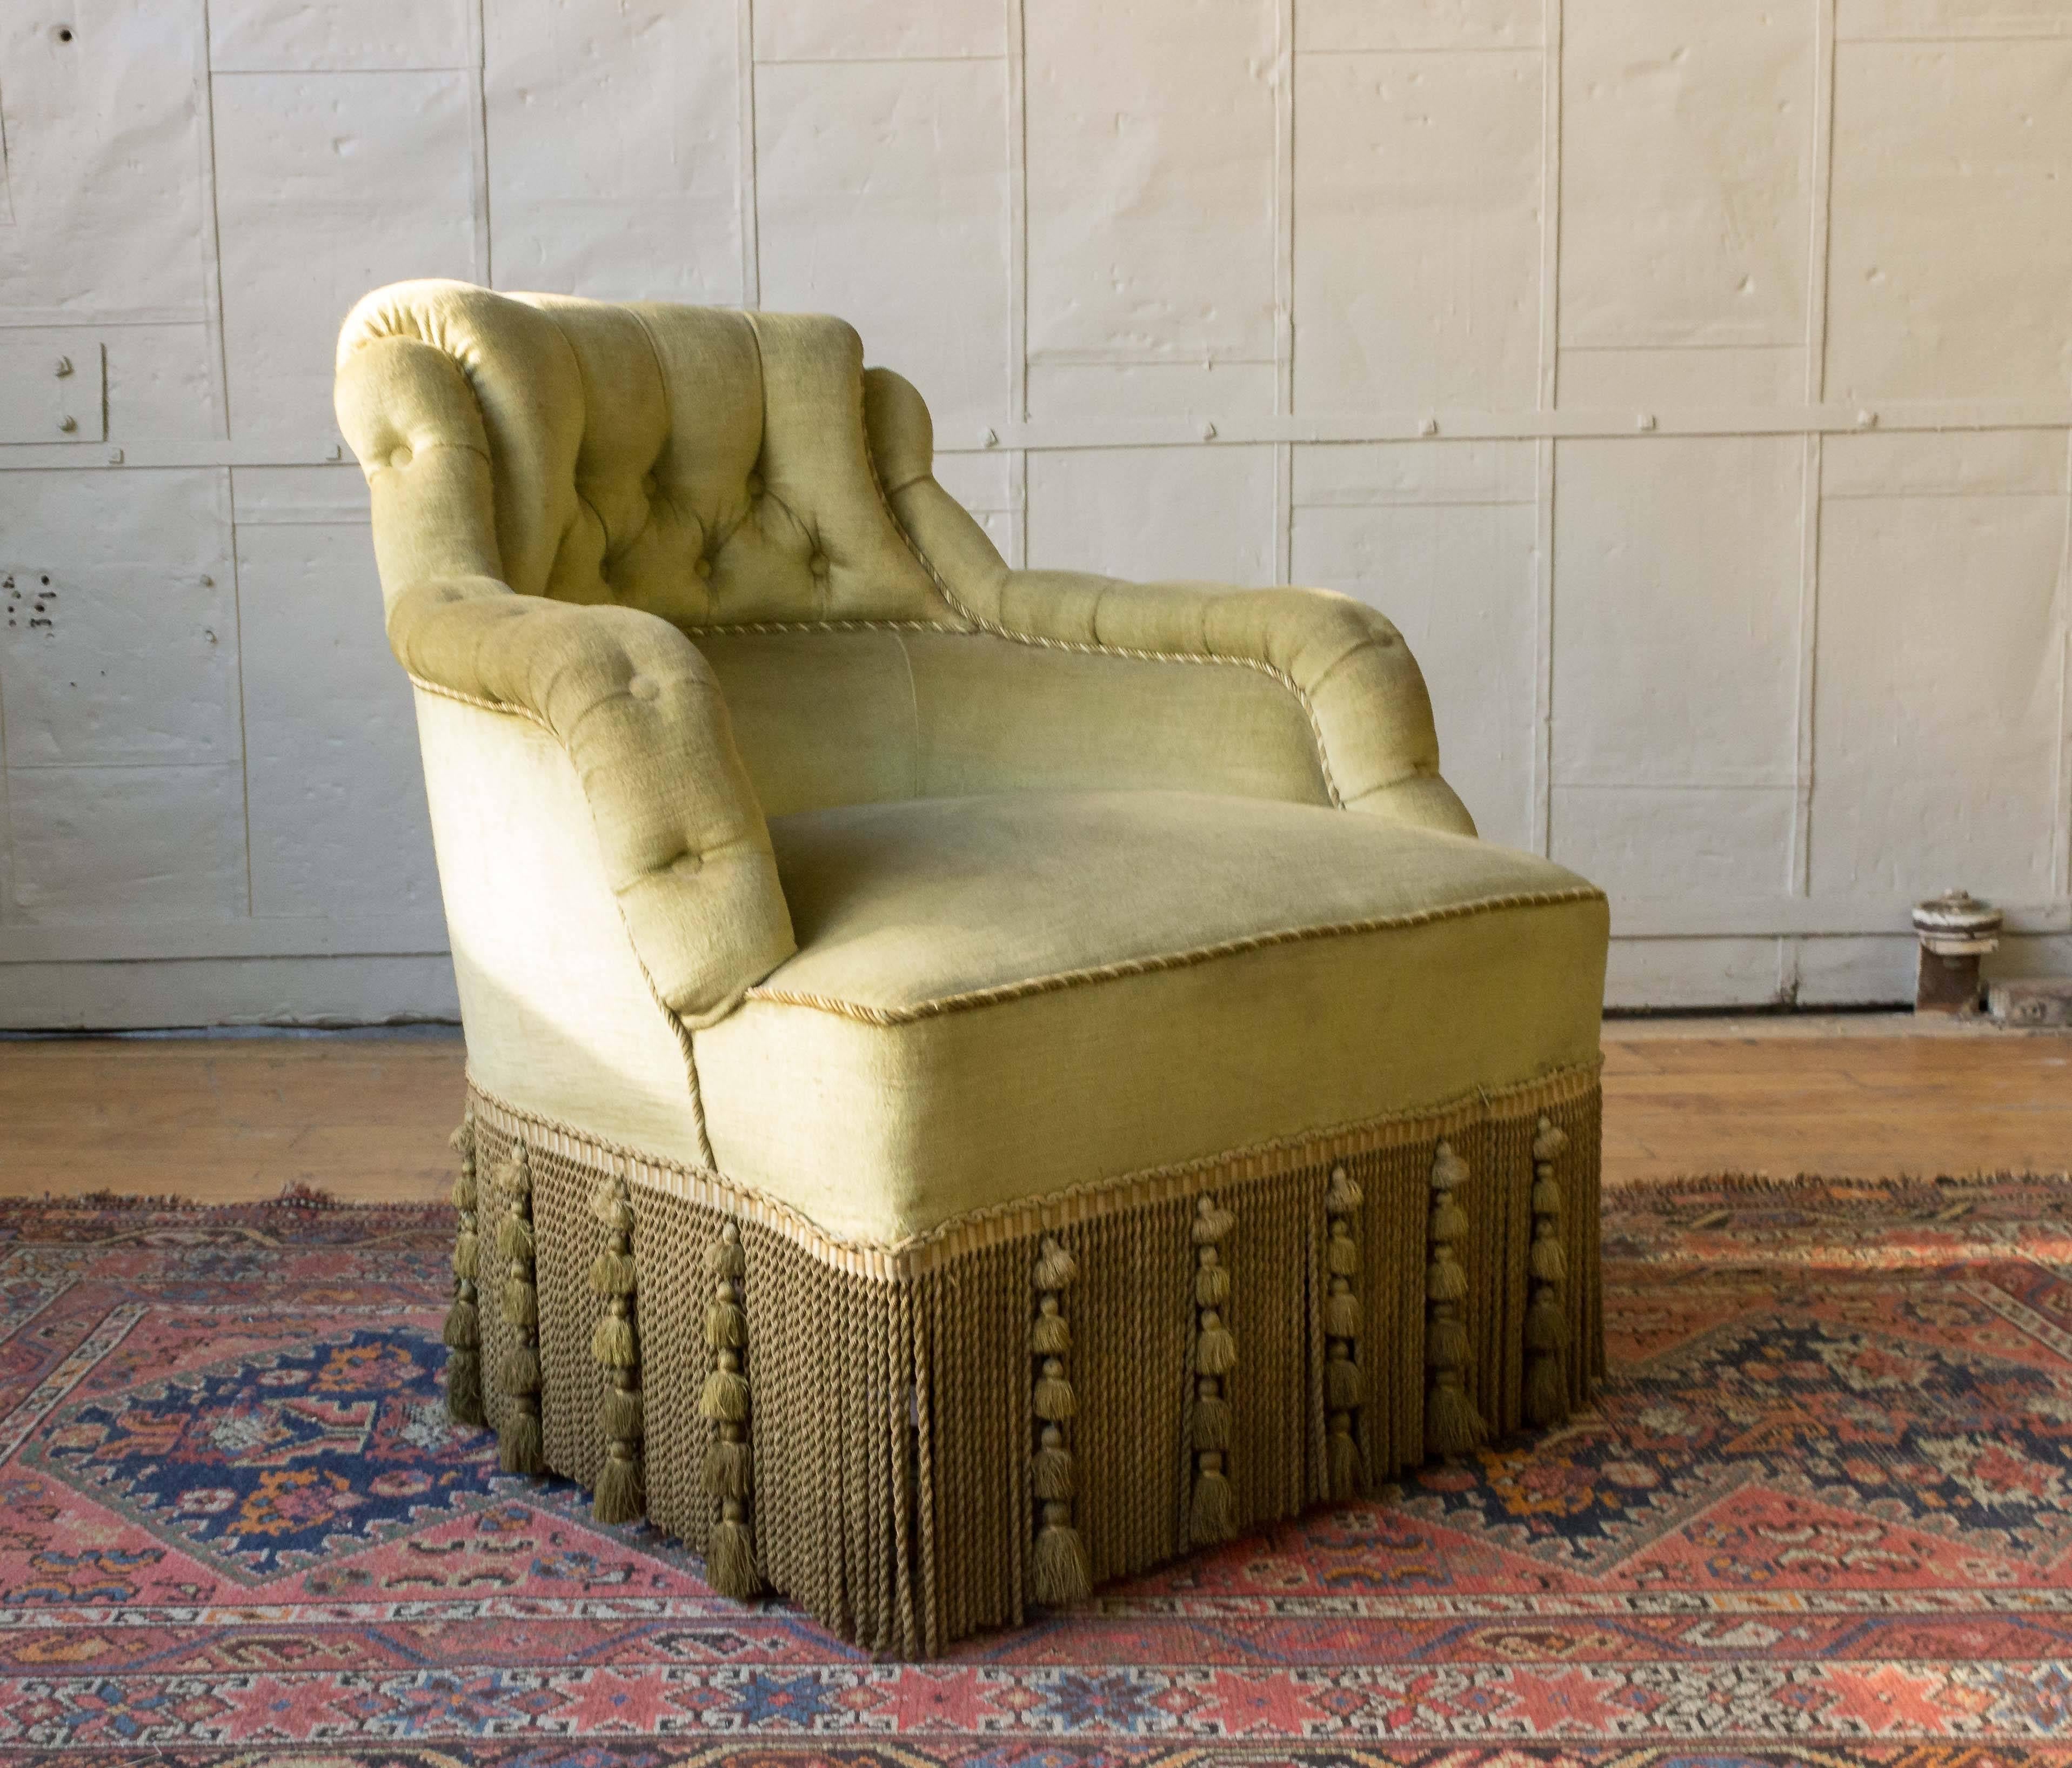 Ein außergewöhnlicher französischer Lesesessel Napoleon III aus dem 19. Dieser einzigartige Stuhl ist mit einem eleganten grün-goldenen Samt gepolstert, der mit aufwendigen geflochtenen Details und dekorativen Fransen einen zeitlosen, raffinierten